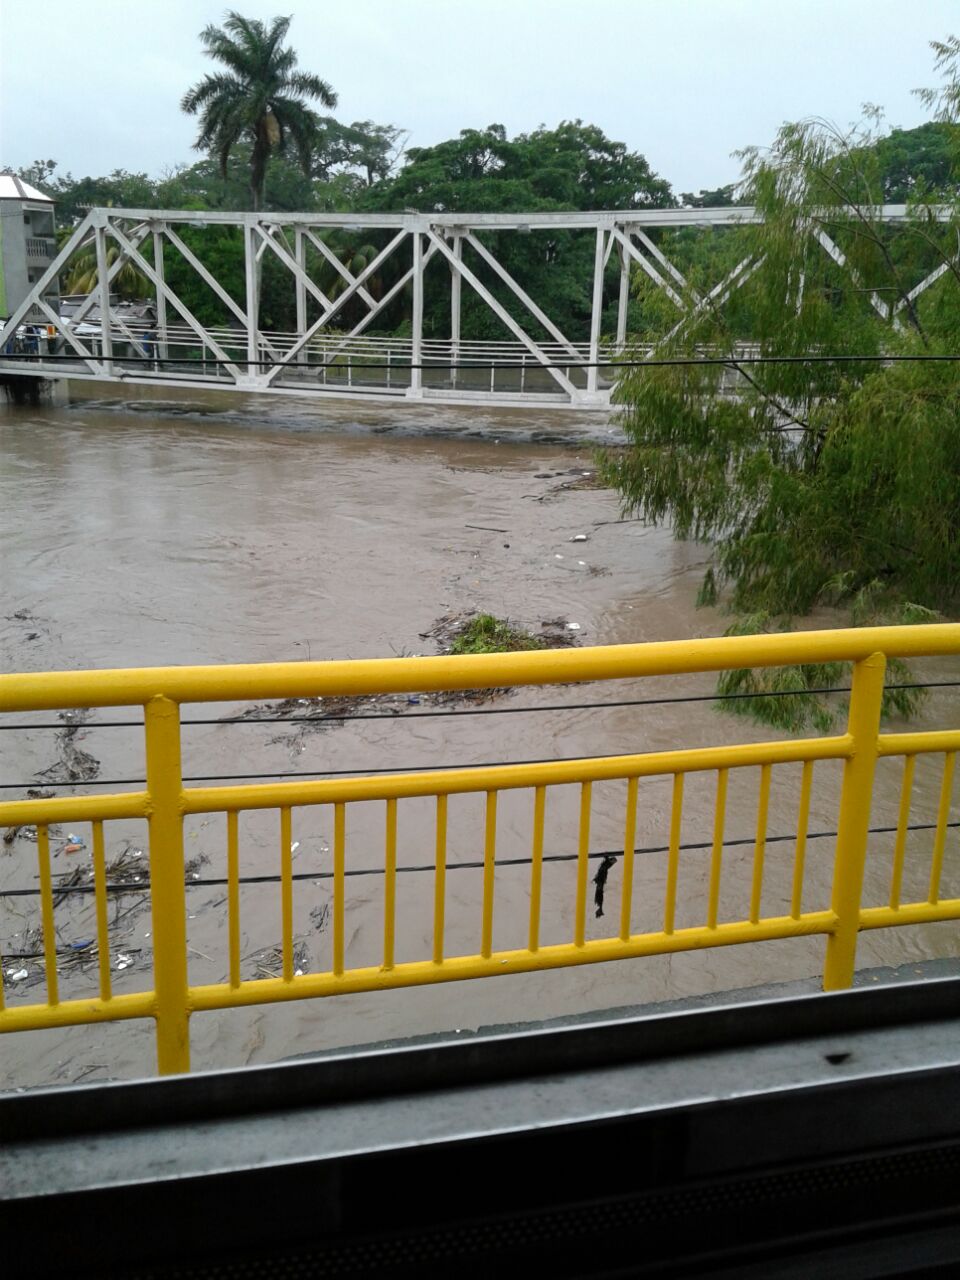 El puente ubicado en el centro del municipio está a punto de desbordarse. Según vecinos, ya se reportan inundaciones en las zonas aledañas.